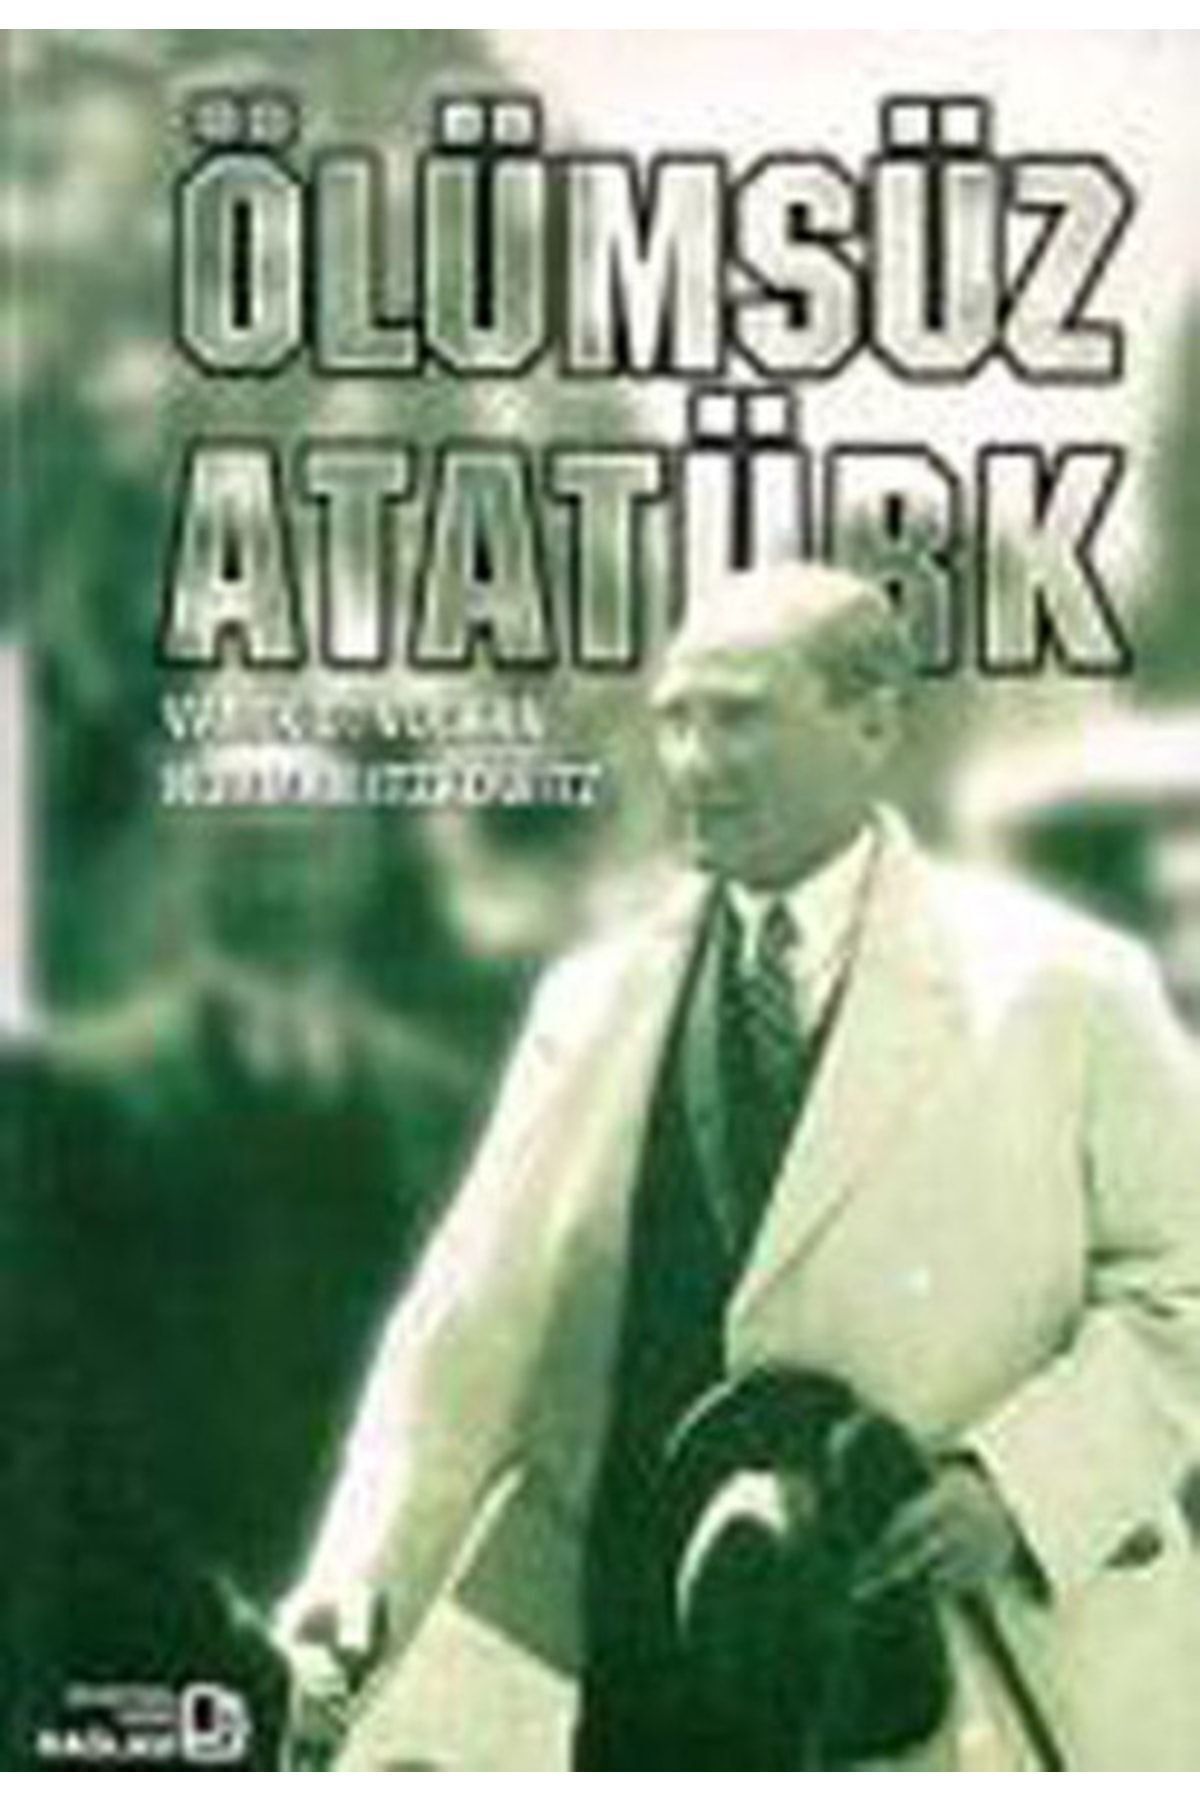 Bağlam Yayıncılık Ölümsüz Atatürk